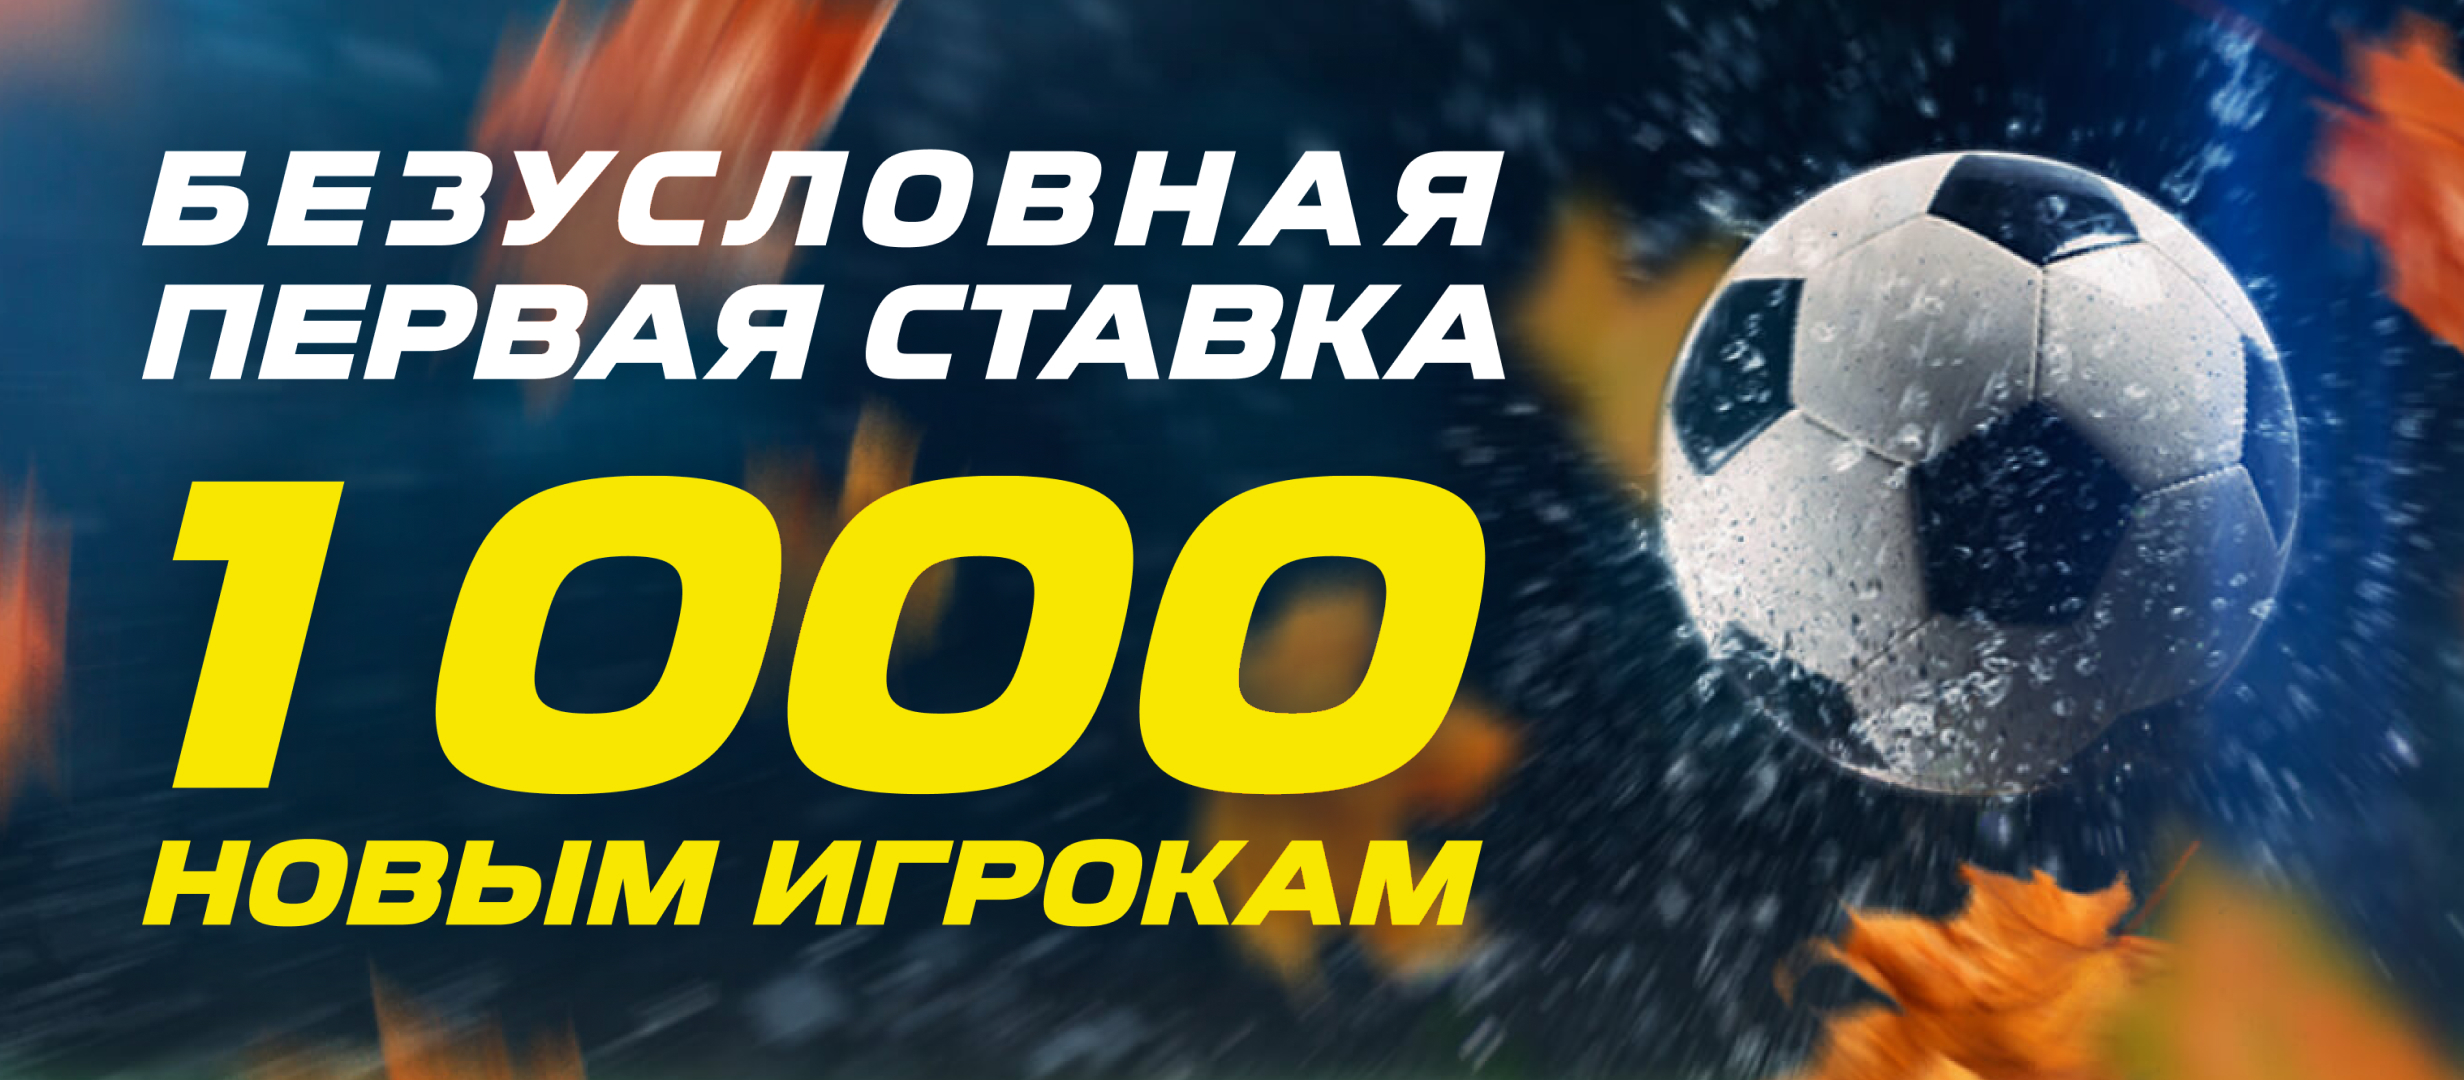 ставки на спорт 1000 рублей фрибет